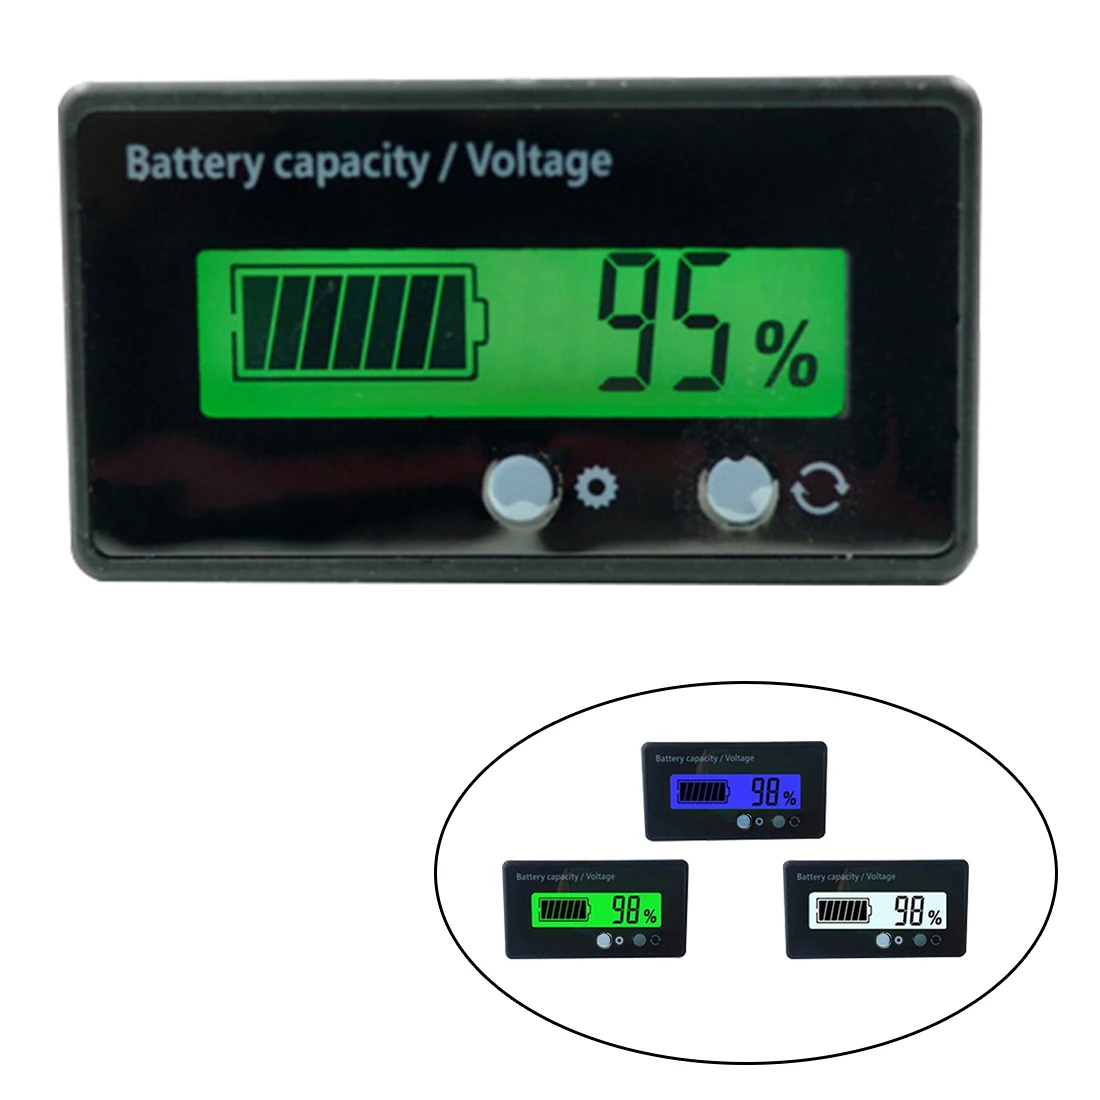 

New LCD Display Waterproof Lead-Acid Battery Capacity Indicator Voltage Tester 6-63V Power Meter